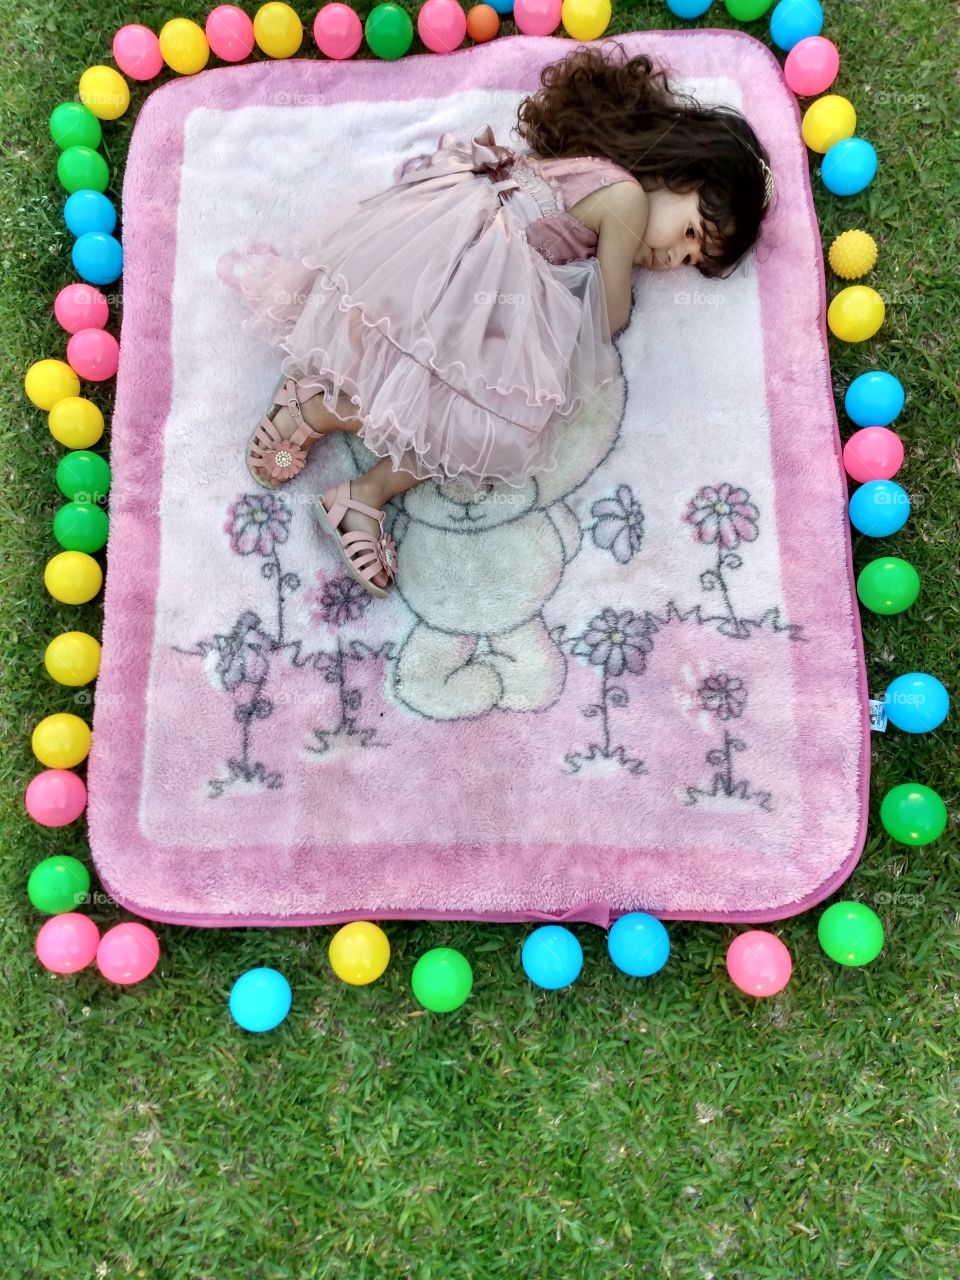 menina de 3 anos deitada no cobertor e a sua  volta tem várias bolinhas coloridas.